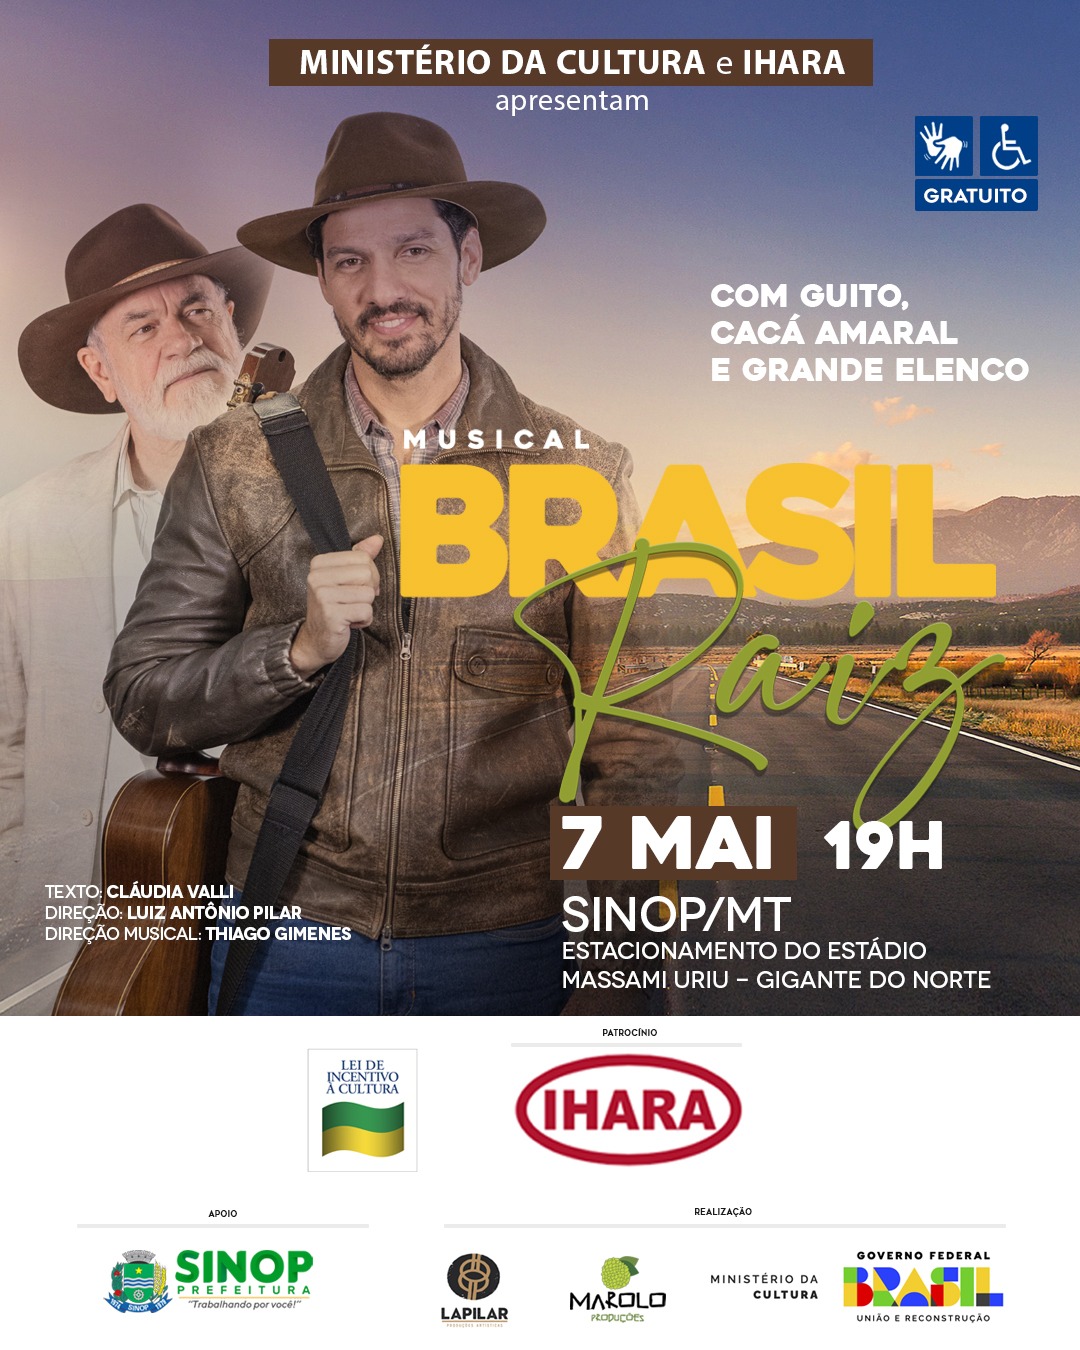 Teatro musical gratuito "Brasil Raiz - Missão de Filho" chega a Sinop com patrocínio da IHARA